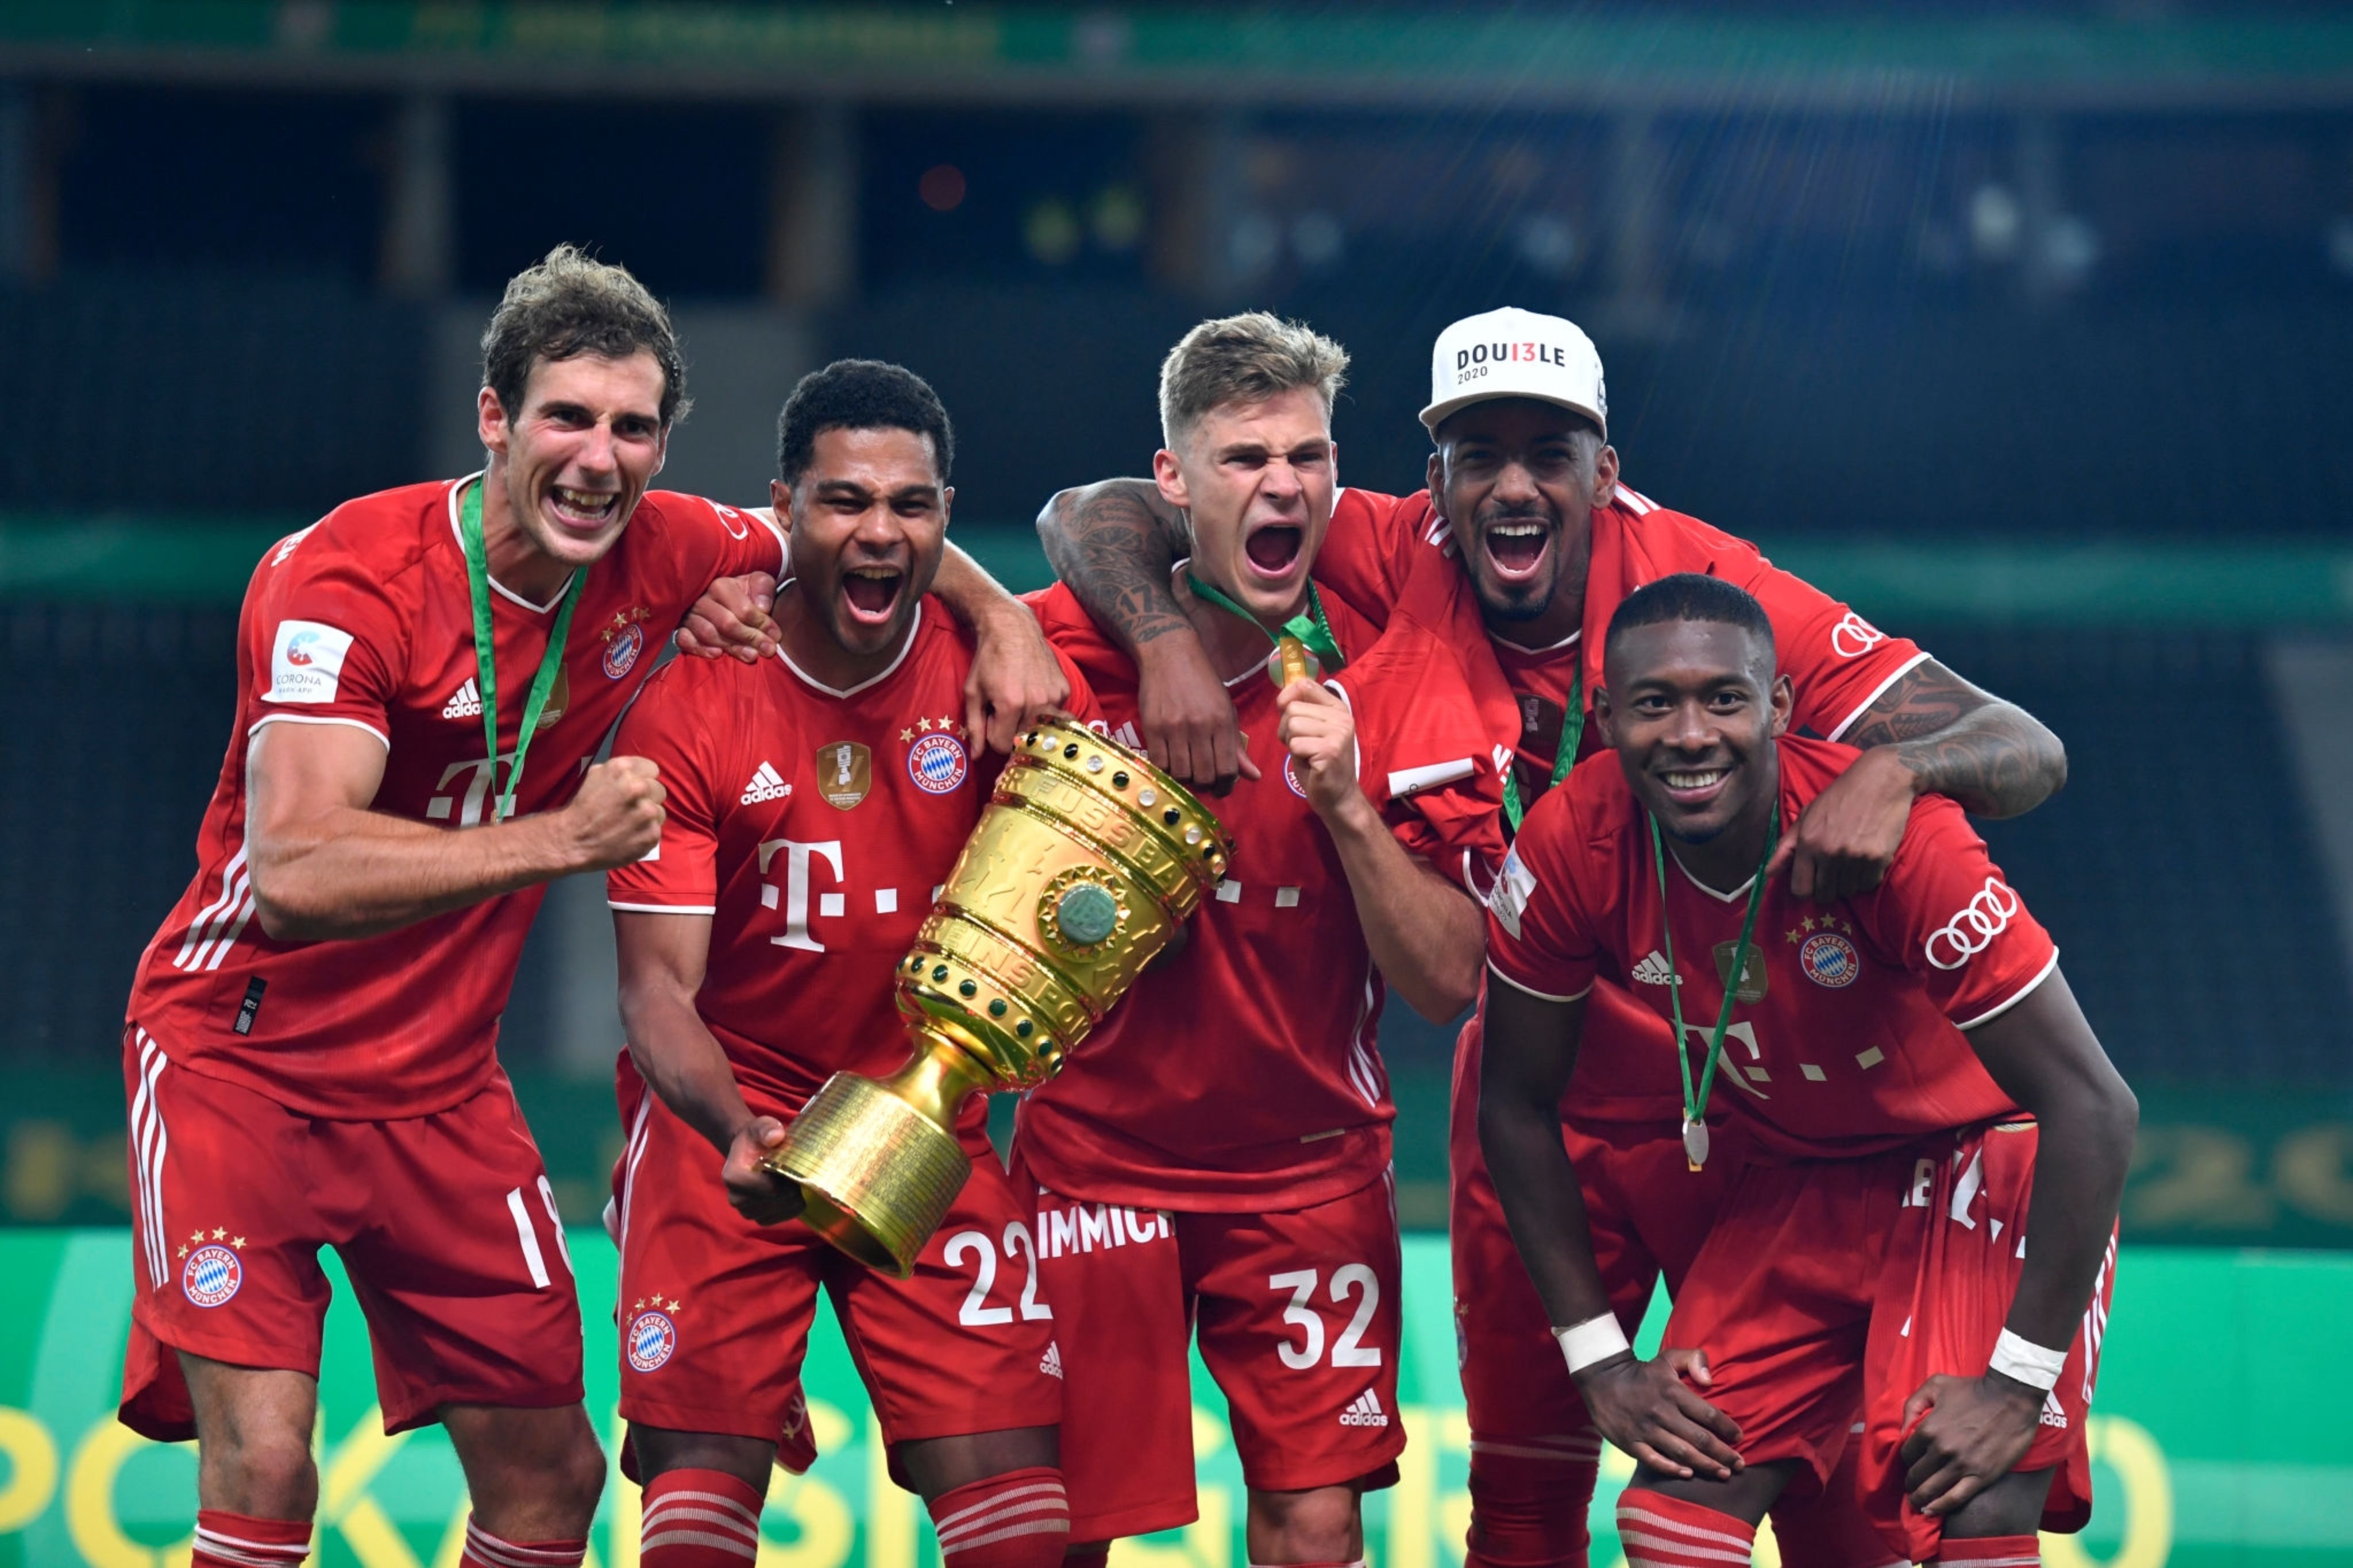 بایرن مونیخ - دی اف بی پوکال - Bayern Munich - DFB Pokal